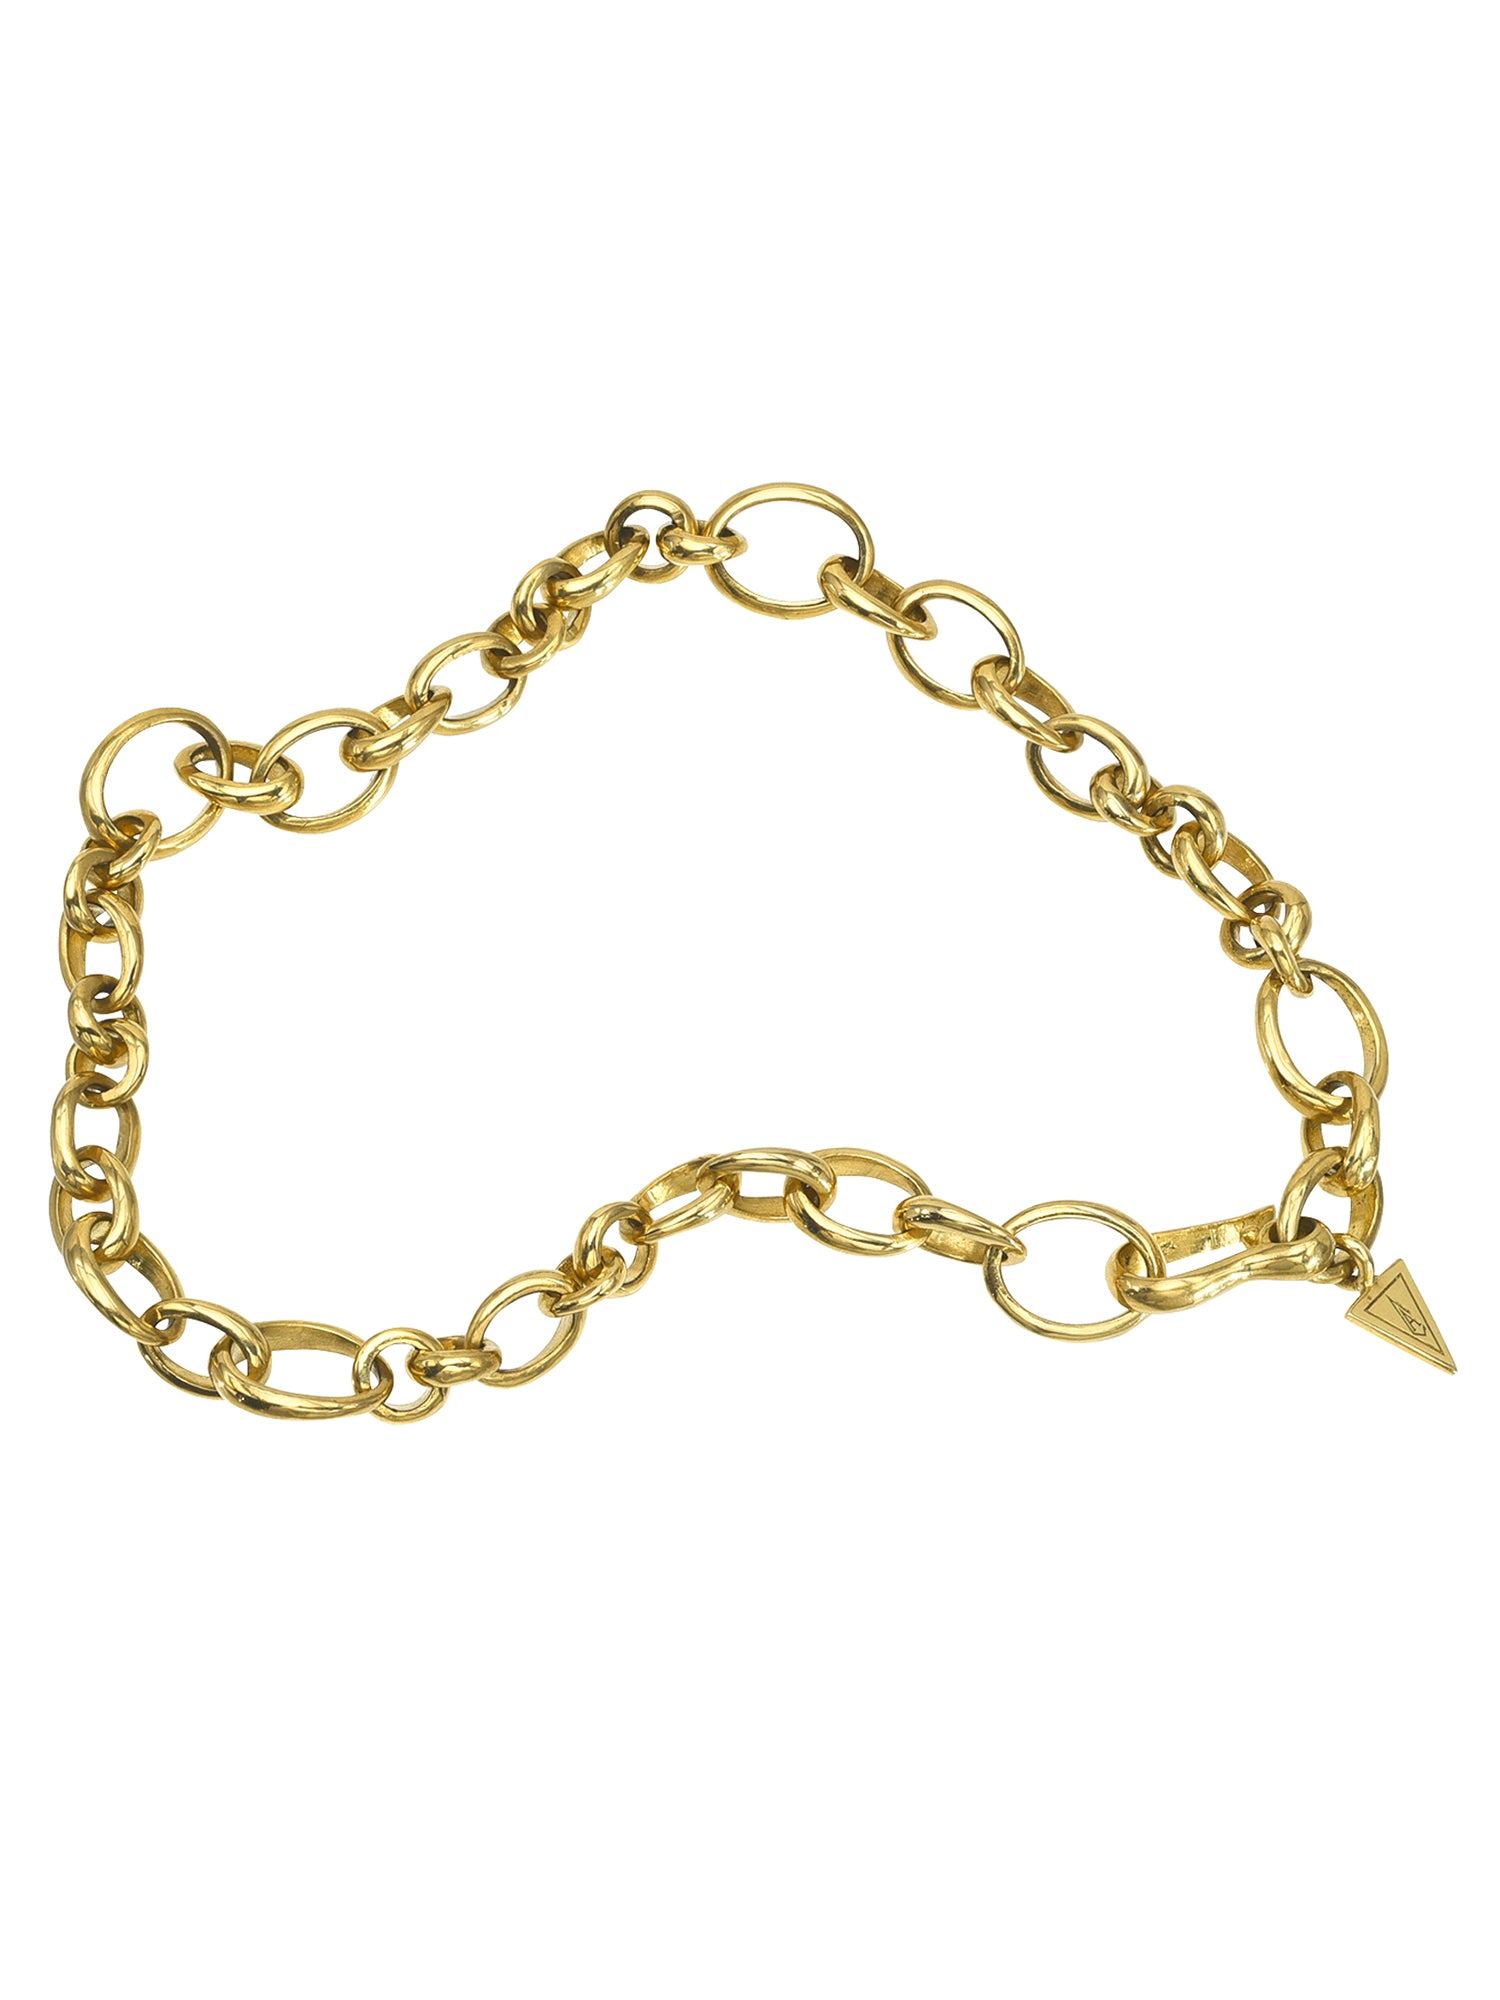 'Chain Gang' - Bracelet